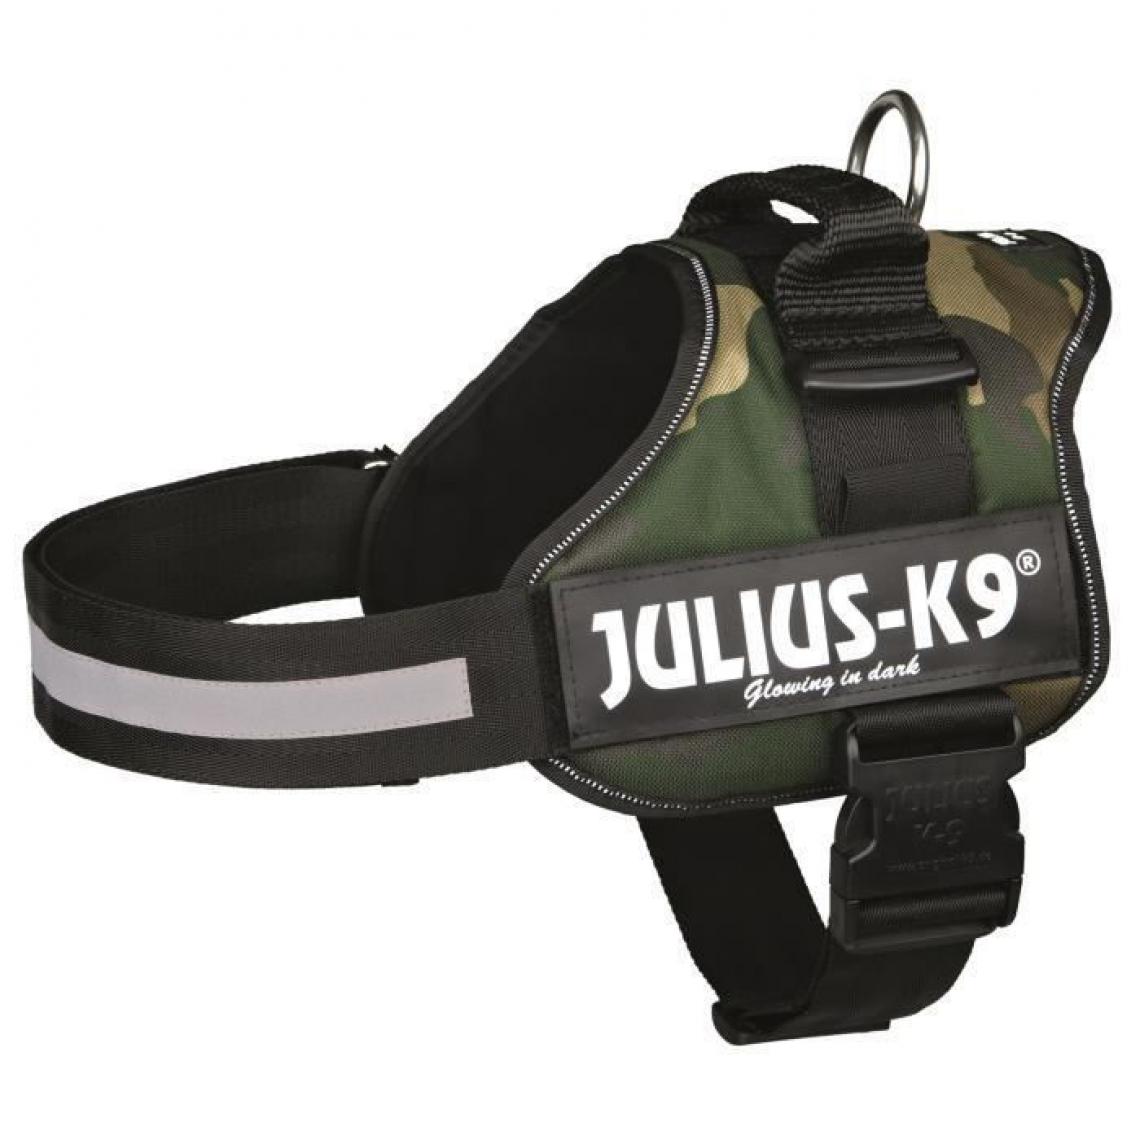 Julius K9 - Harnais Power Julius-K9 - 1 - L : 66-85 cm-50 mm - Camouflage - Pour chien - Equipement de transport pour chien